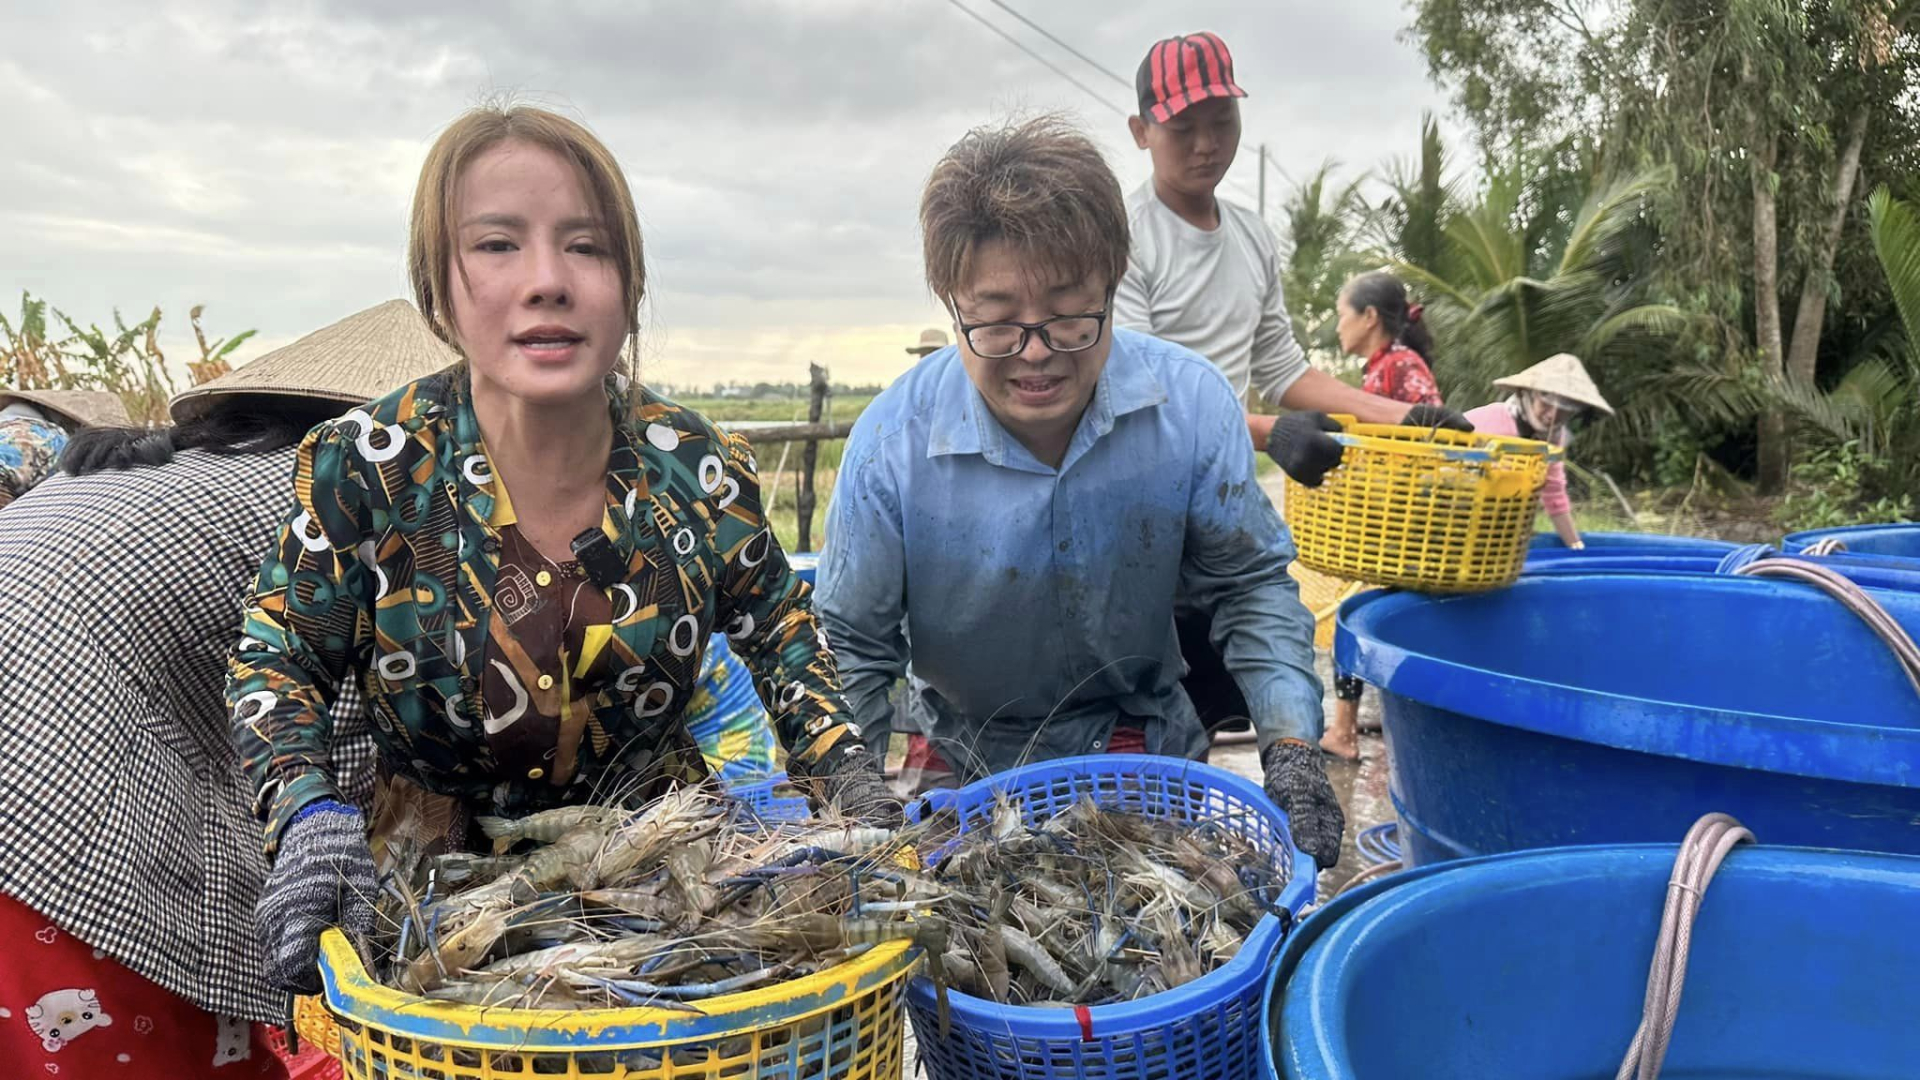 Đức Nhân đưa chồng người Nhật về Việt Nam tắm heo, lội ruộng bắt cá mặc sình bùn khiến netizen thích thú - ảnh 1